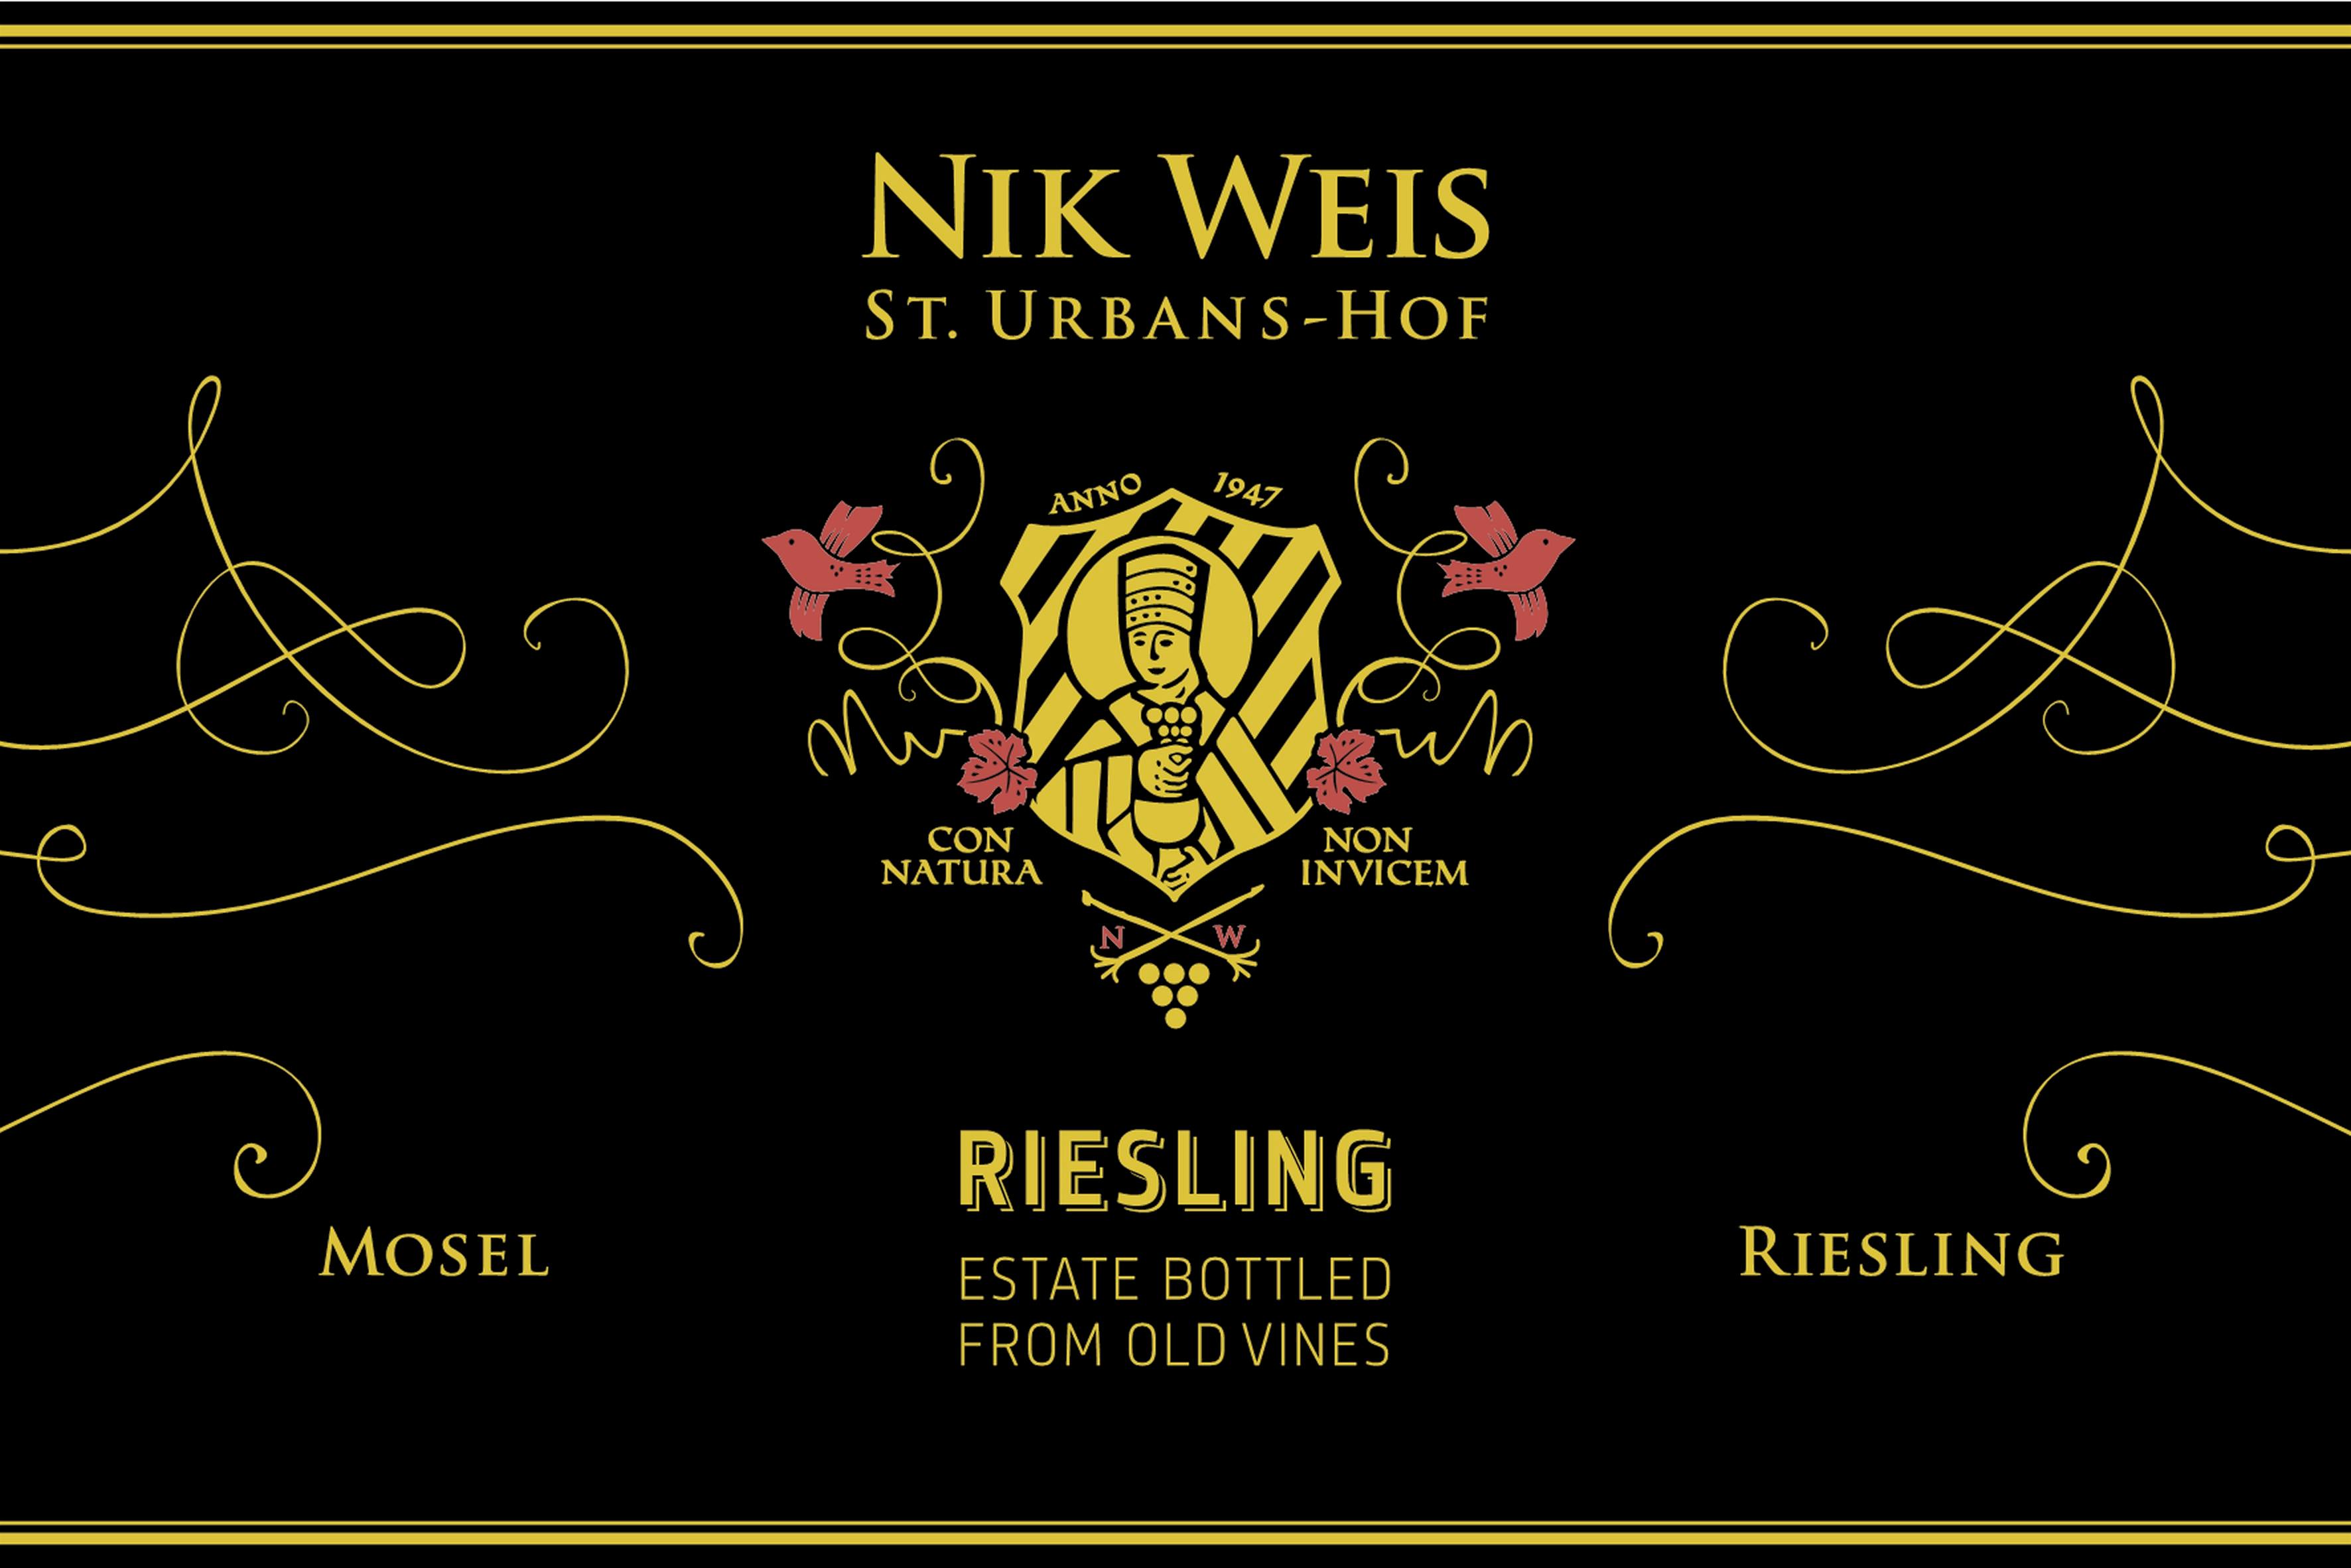 Label for Nik Weis St.-Urbans-Hof